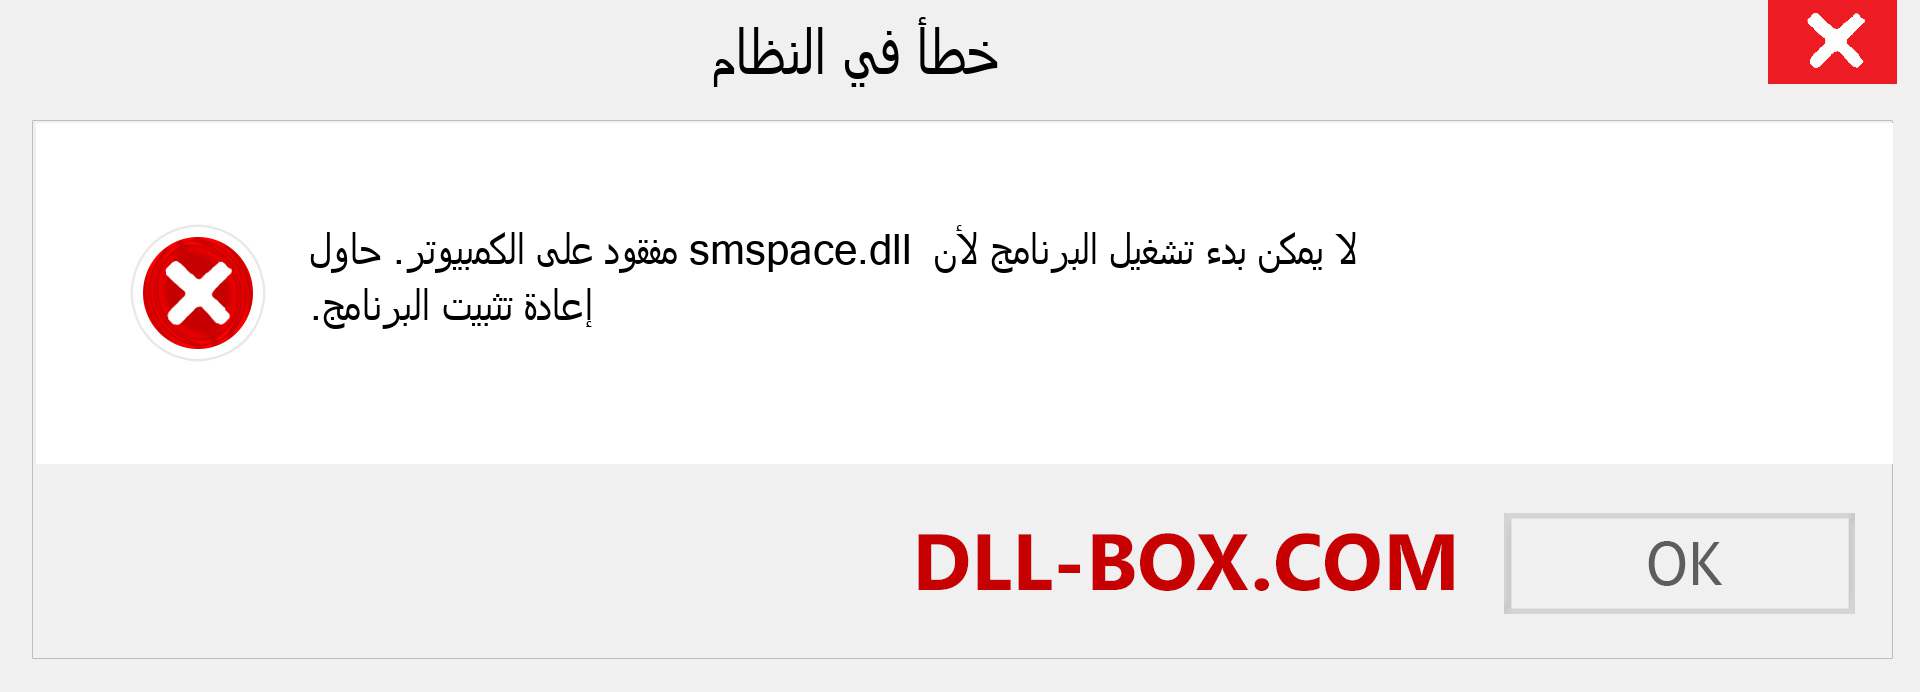 ملف smspace.dll مفقود ؟. التنزيل لنظام التشغيل Windows 7 و 8 و 10 - إصلاح خطأ smspace dll المفقود على Windows والصور والصور